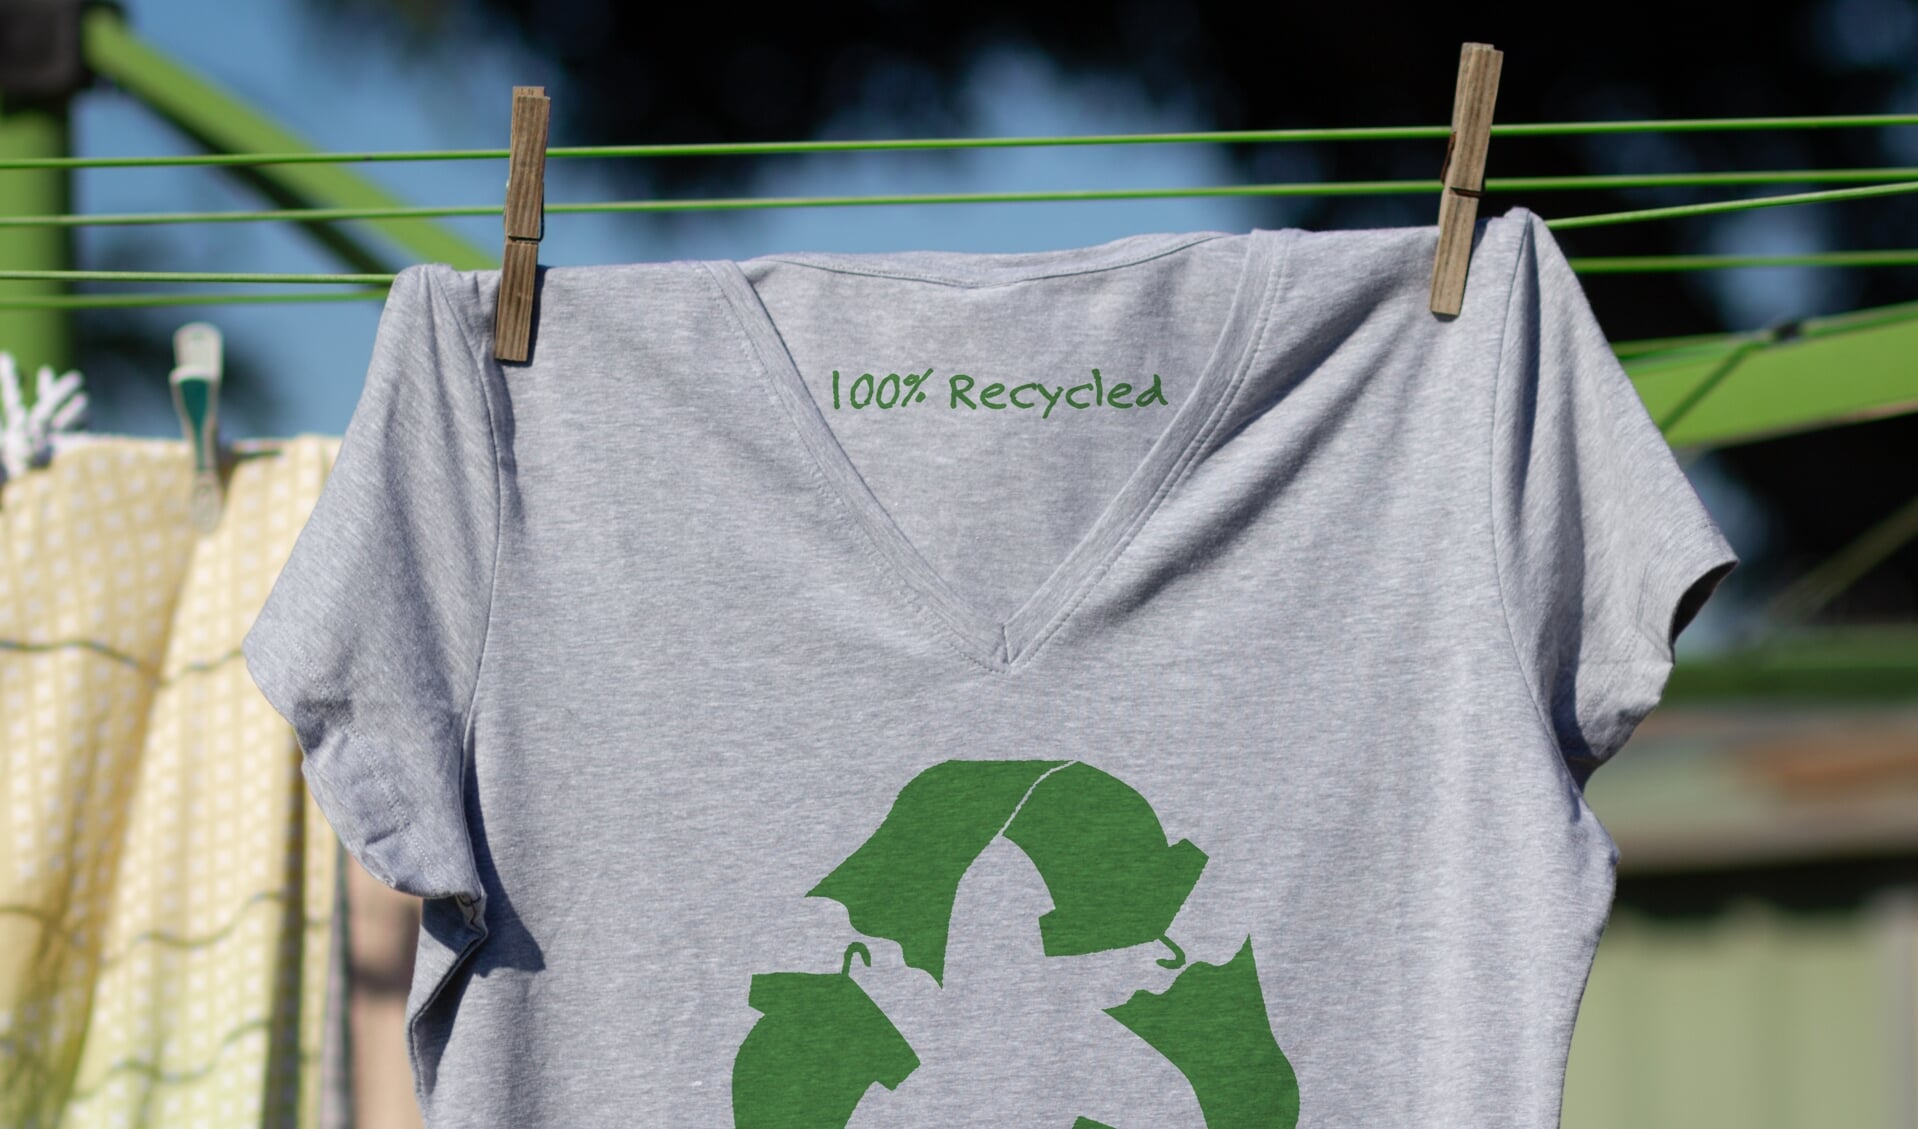 Geef oude kleding een nieuw leven: hergebruik en recycling is beter voor het milieu en in dit geval steunt het ook nog eens een goed doel.